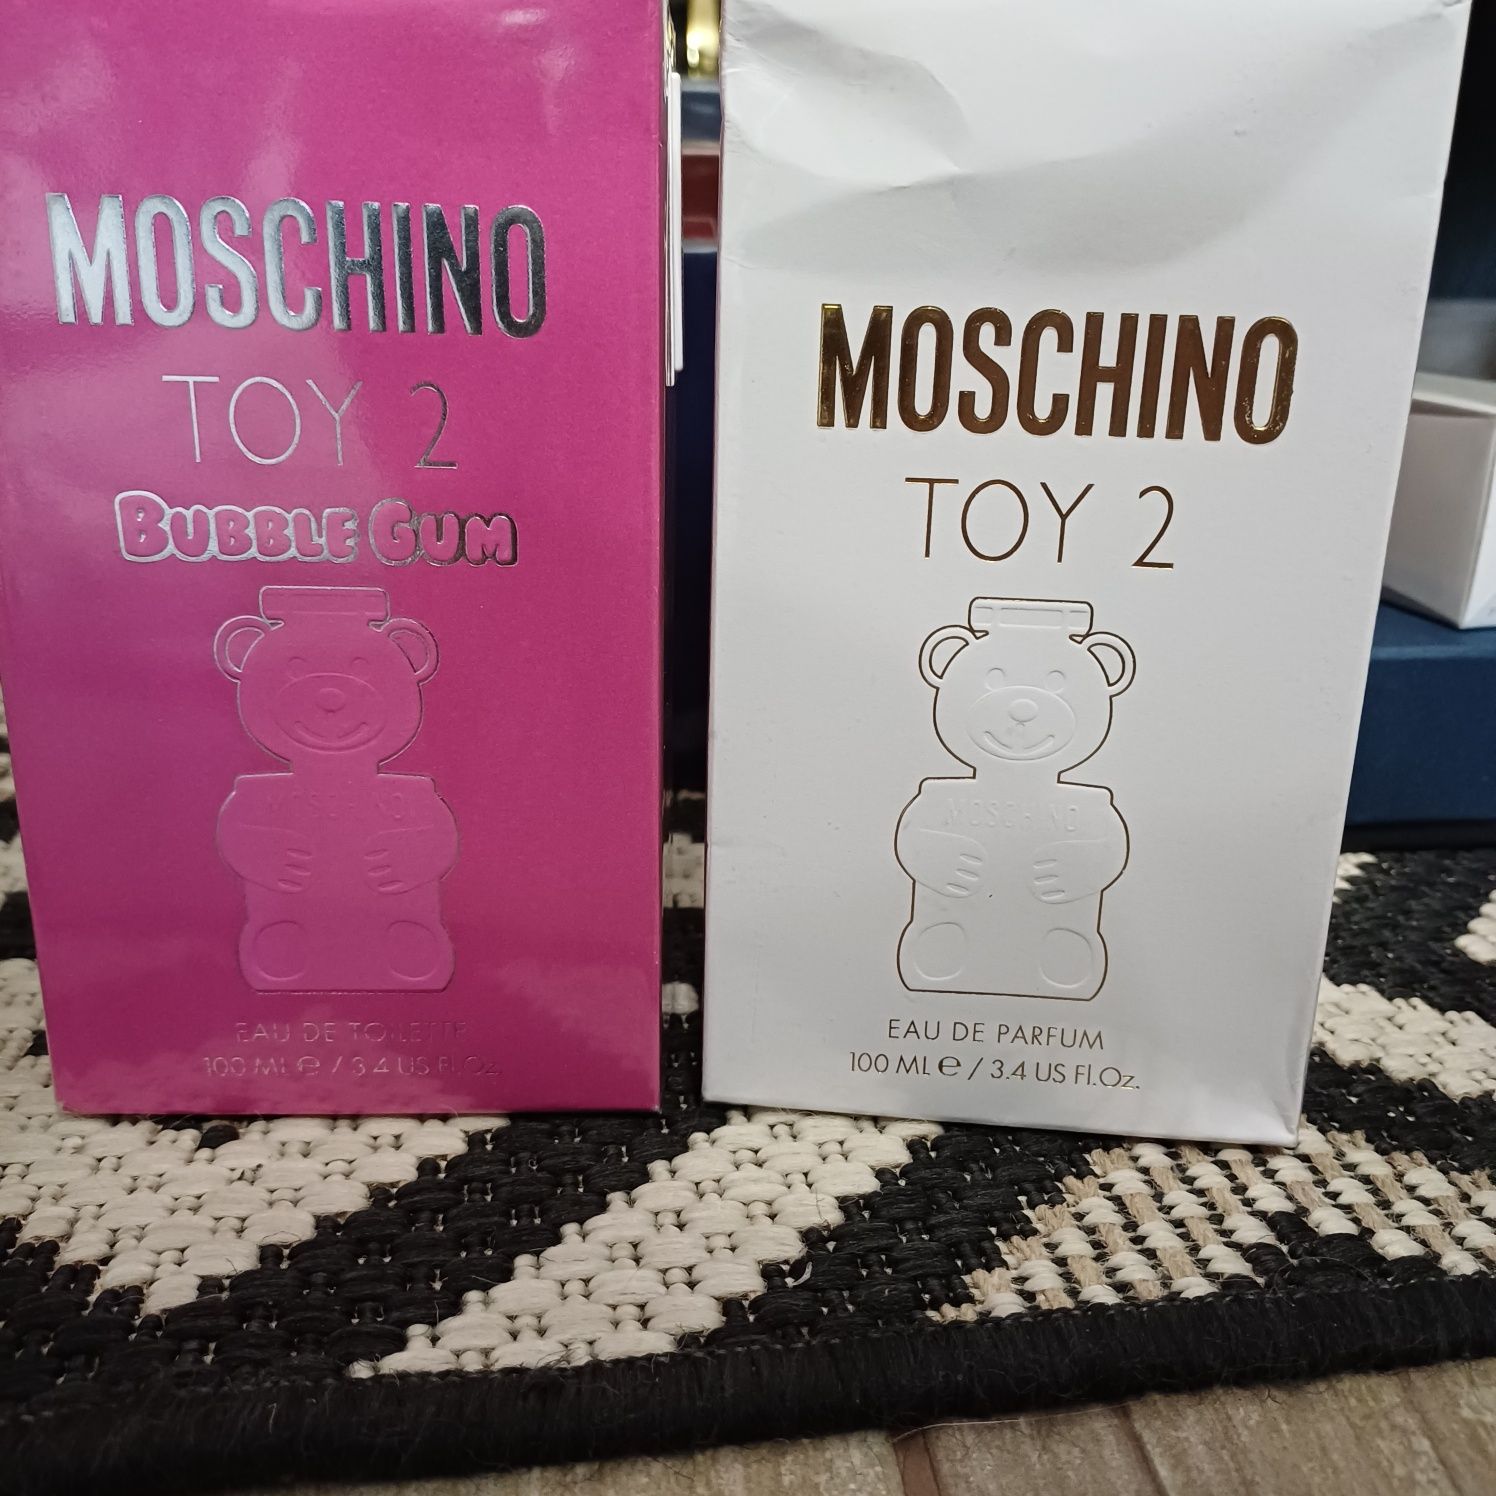 Moschino Toy 2 eau de parfum